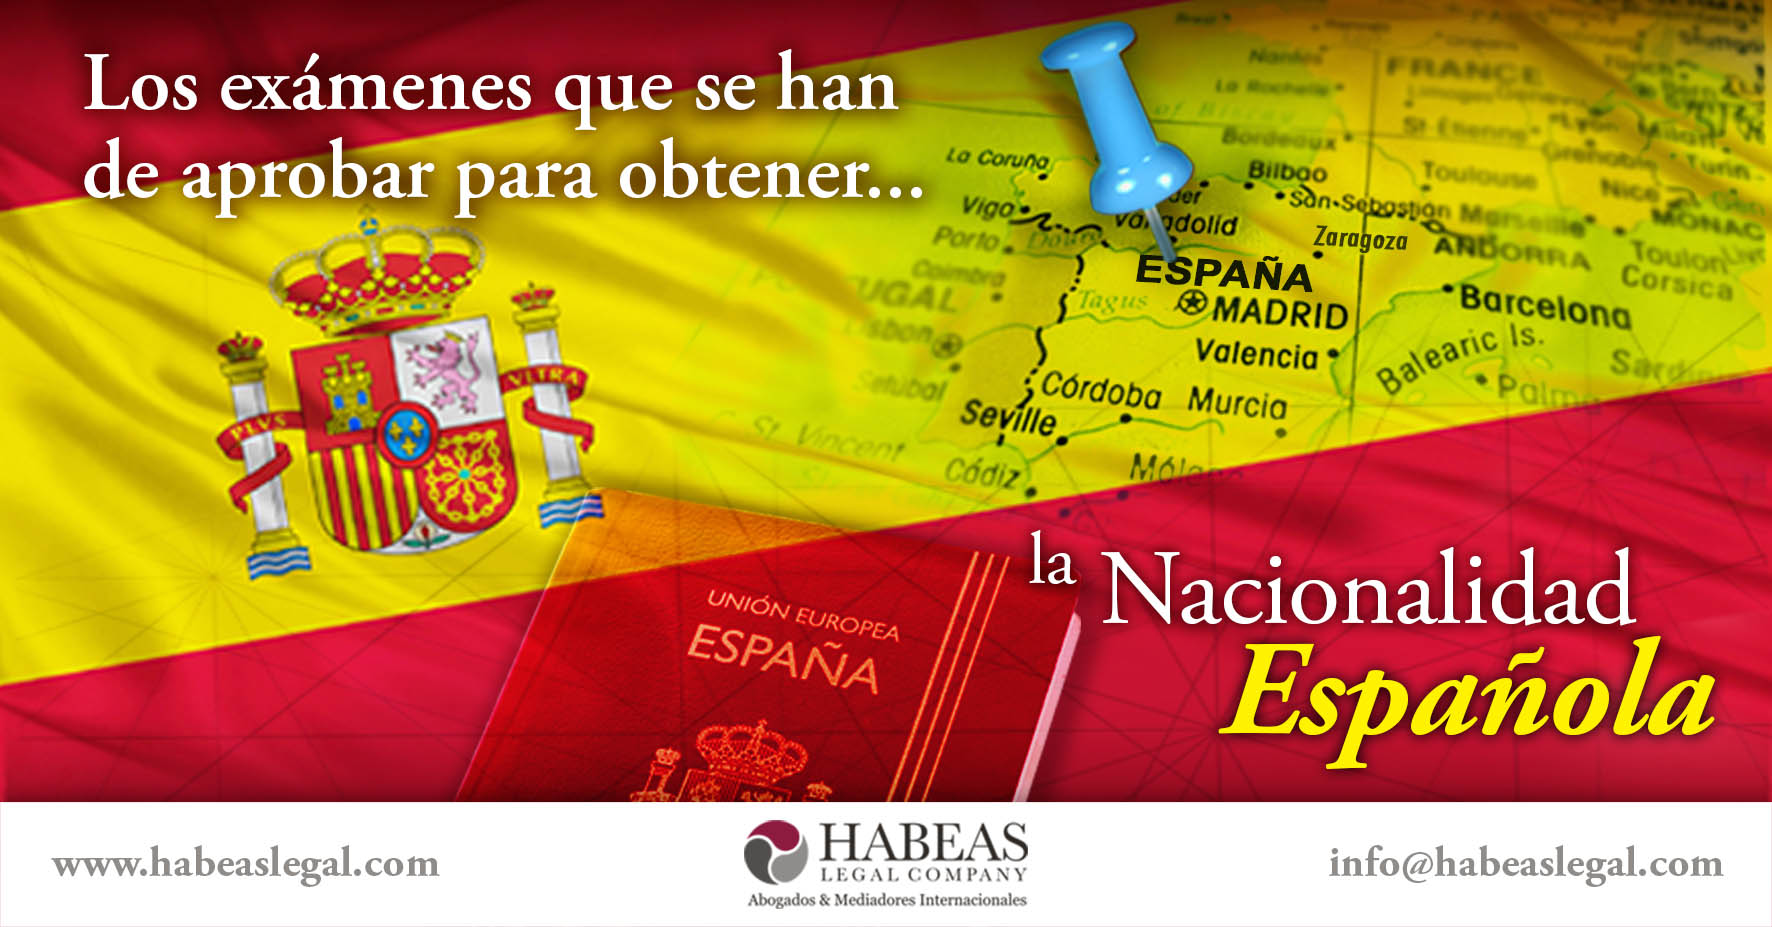 Nacionalidad española examenes Habeas Legal - Exámenes Nacionalidad Española